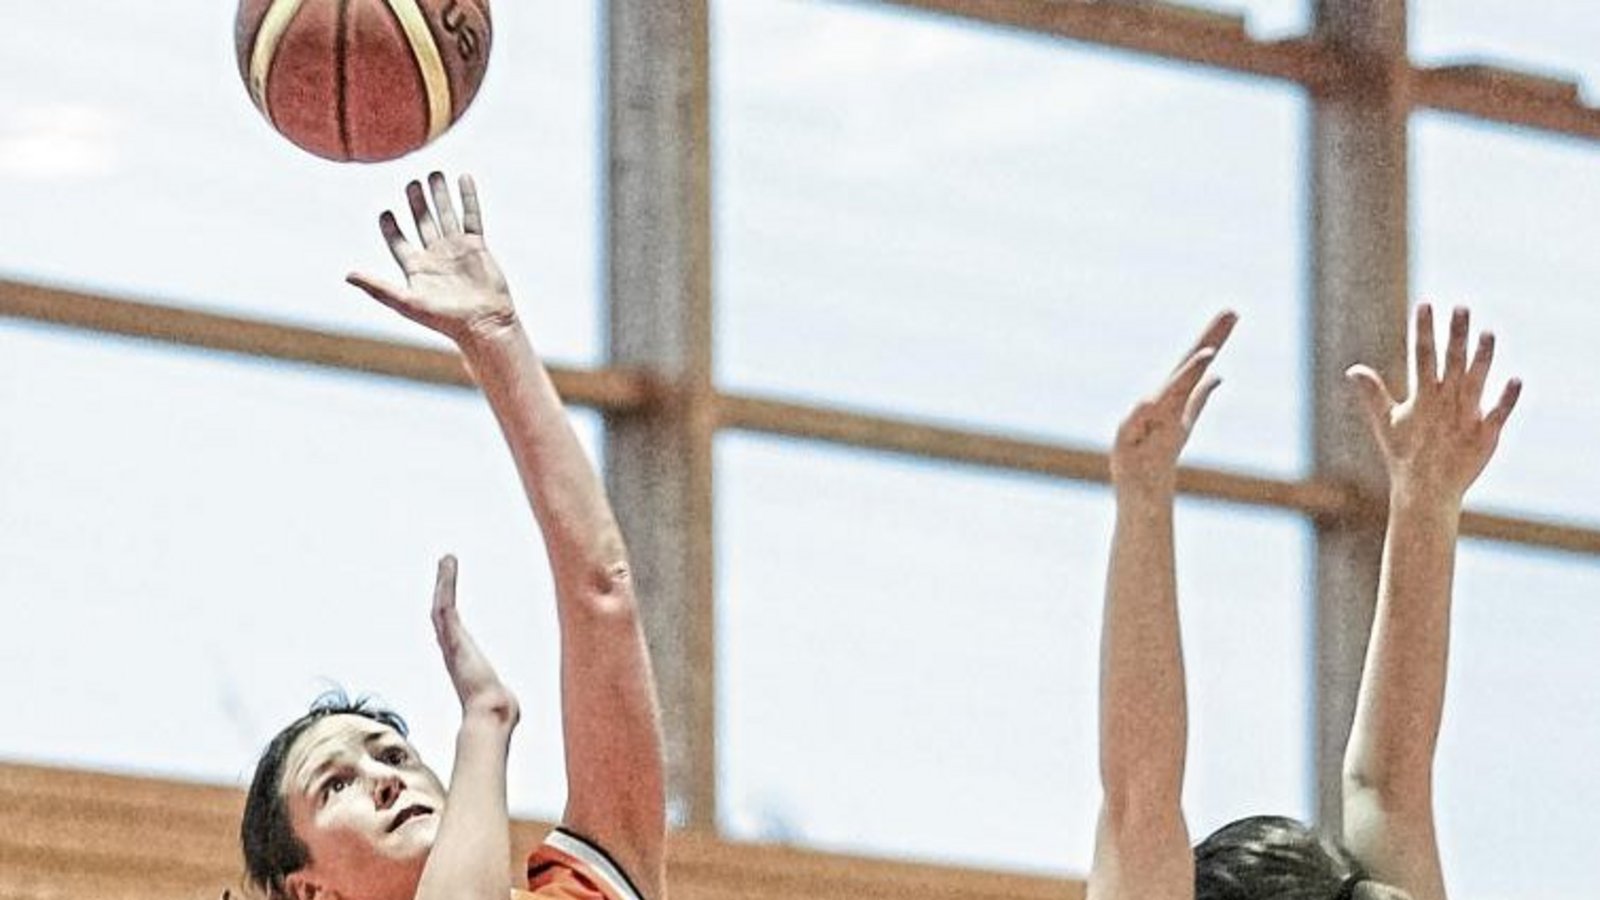 Nathalie Stricker-Shaver ist ein Musterbeispiel an Einsatzwillen und -bereitschaft, wenn die Basketballerinnen der BSG Vaihingen/Sachsenheim auf Korbjagd gehen. Foto: Simecek